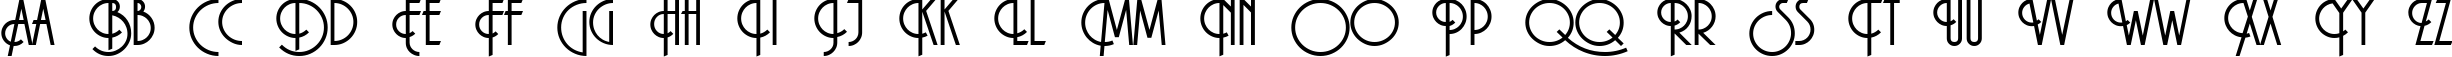 Пример написания английского алфавита шрифтом Macarena